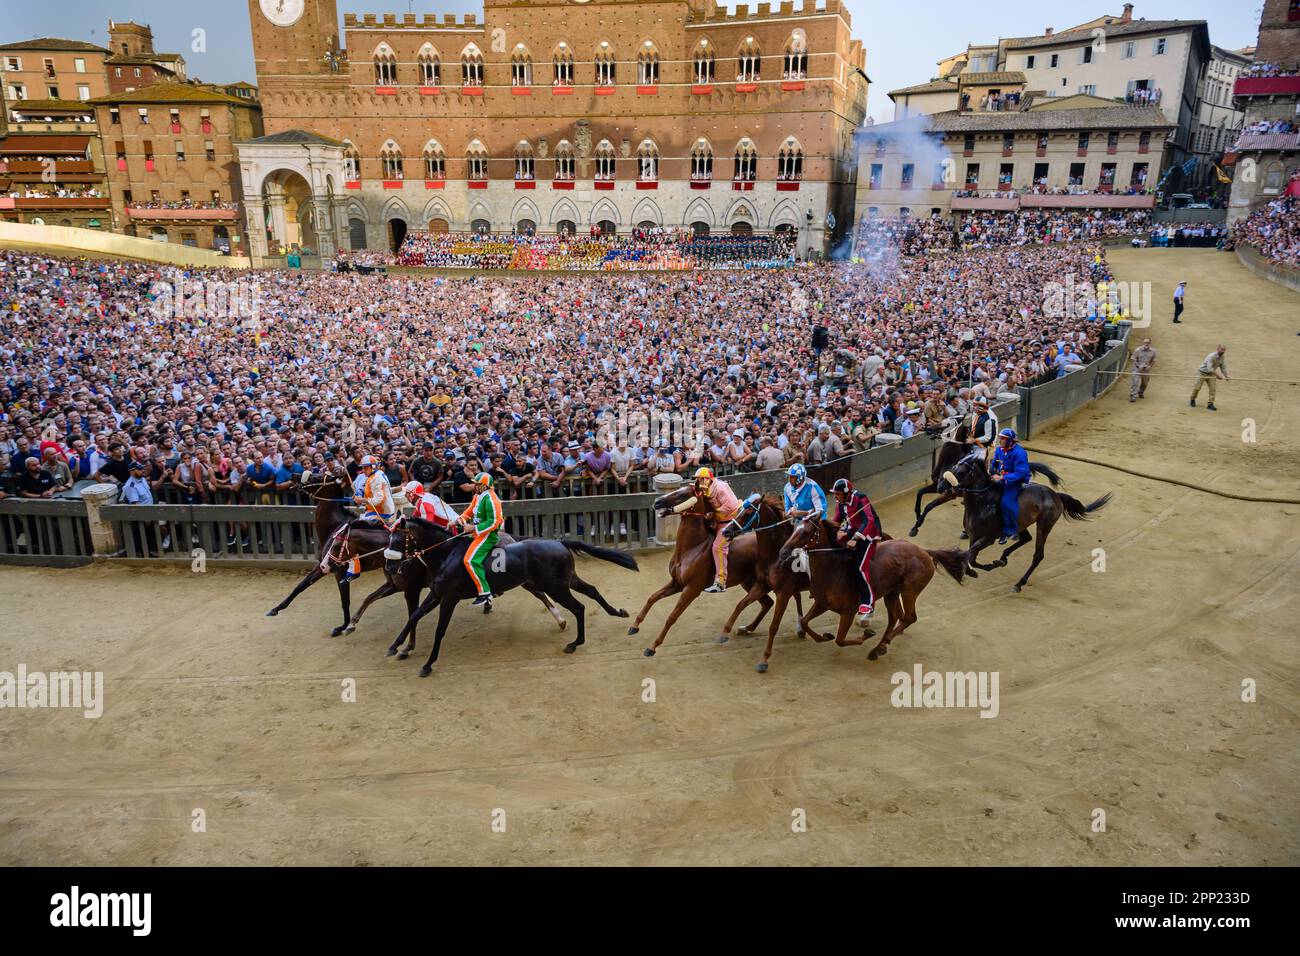 Siena, Italia - 17 2021 agosto: Mossa o inizio della corsa ippica pubblica Palio di Siena sulla piazza principale Foto Stock